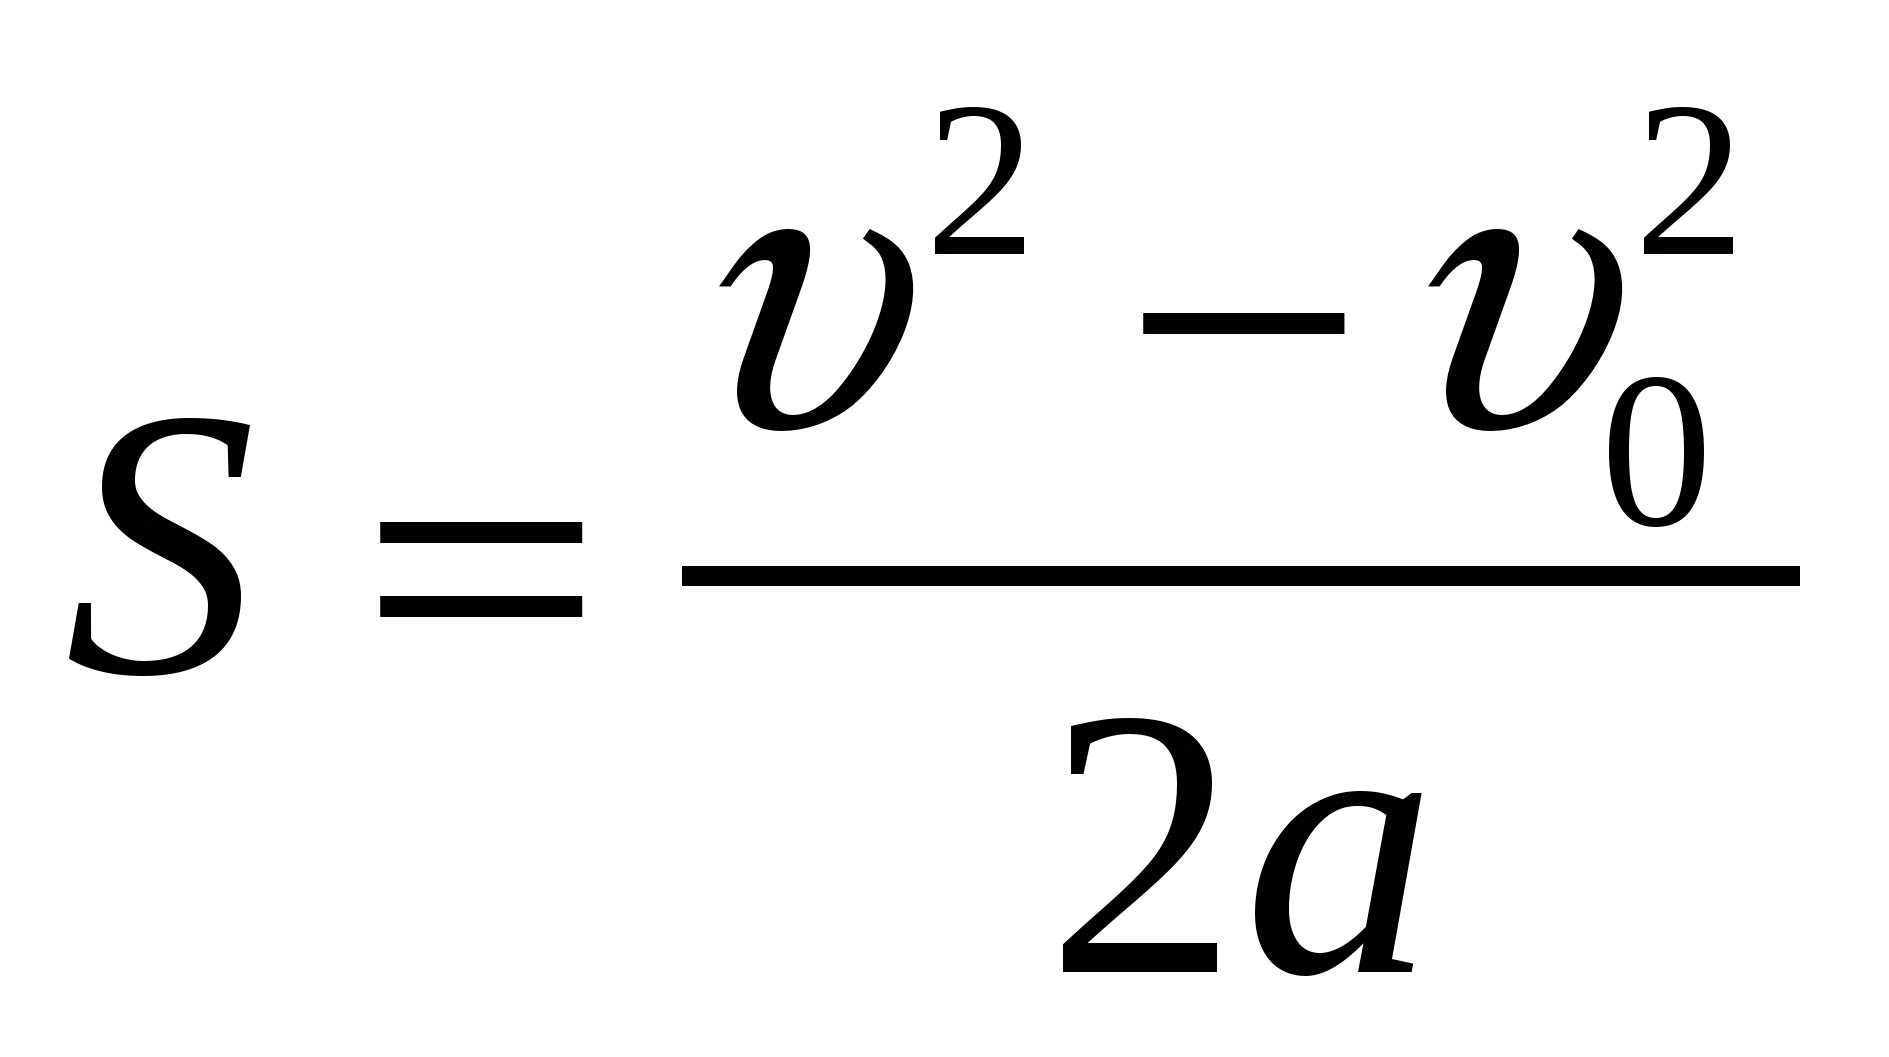 S v2 v02/2a. S V 2-v0 2/2a. V2-v2/2a. Безвременная формула перемещения. Формула спорит